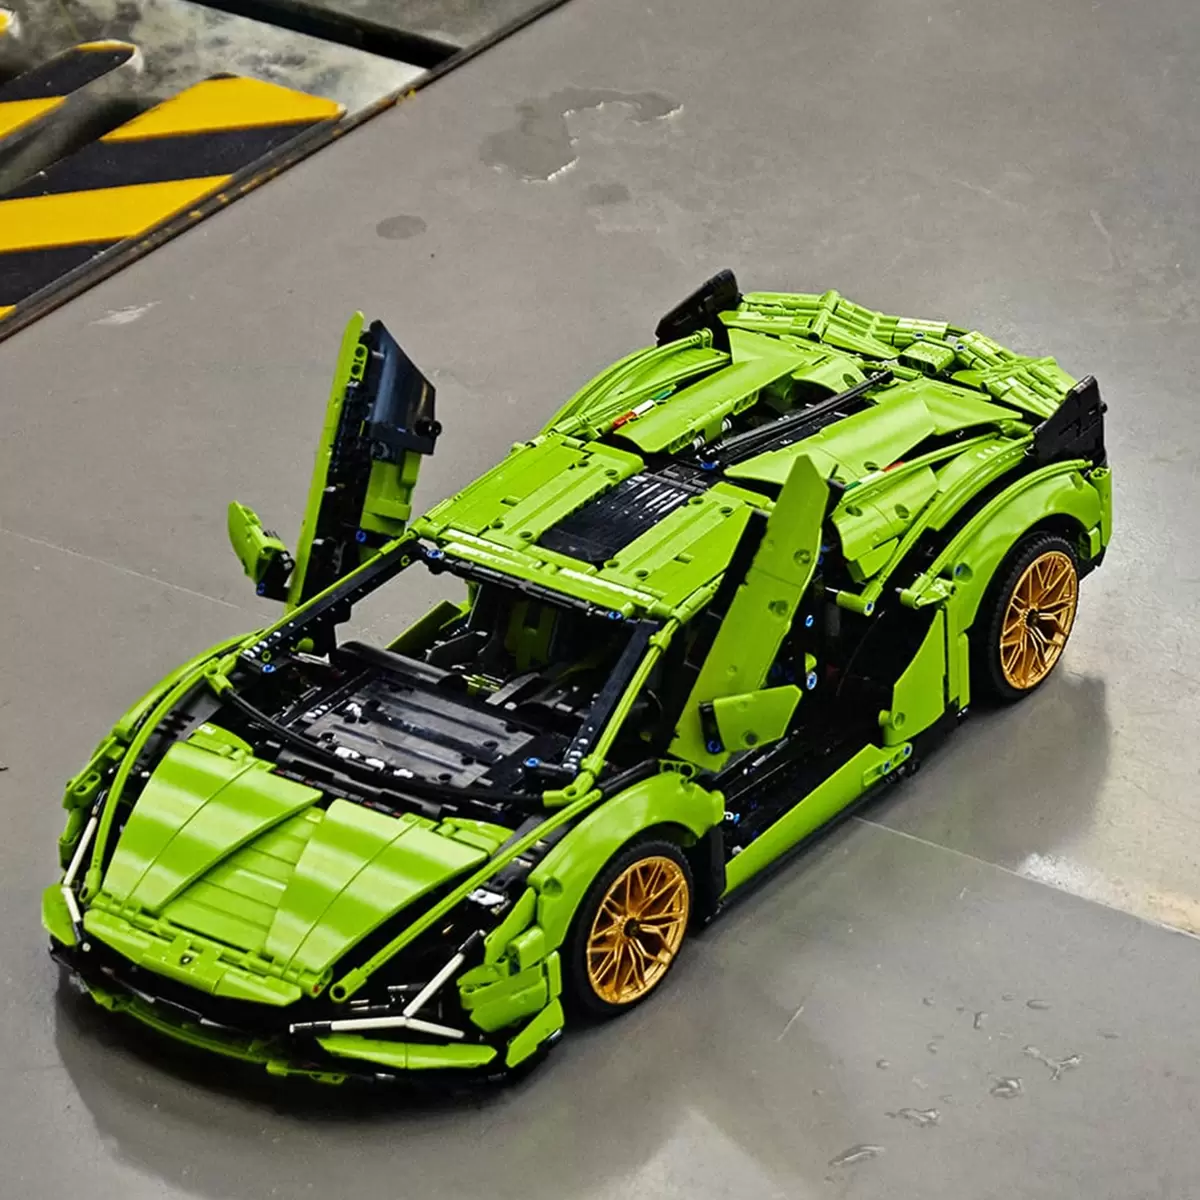 LEGO 科技系列 藍寶堅尼跑車模型車 42115